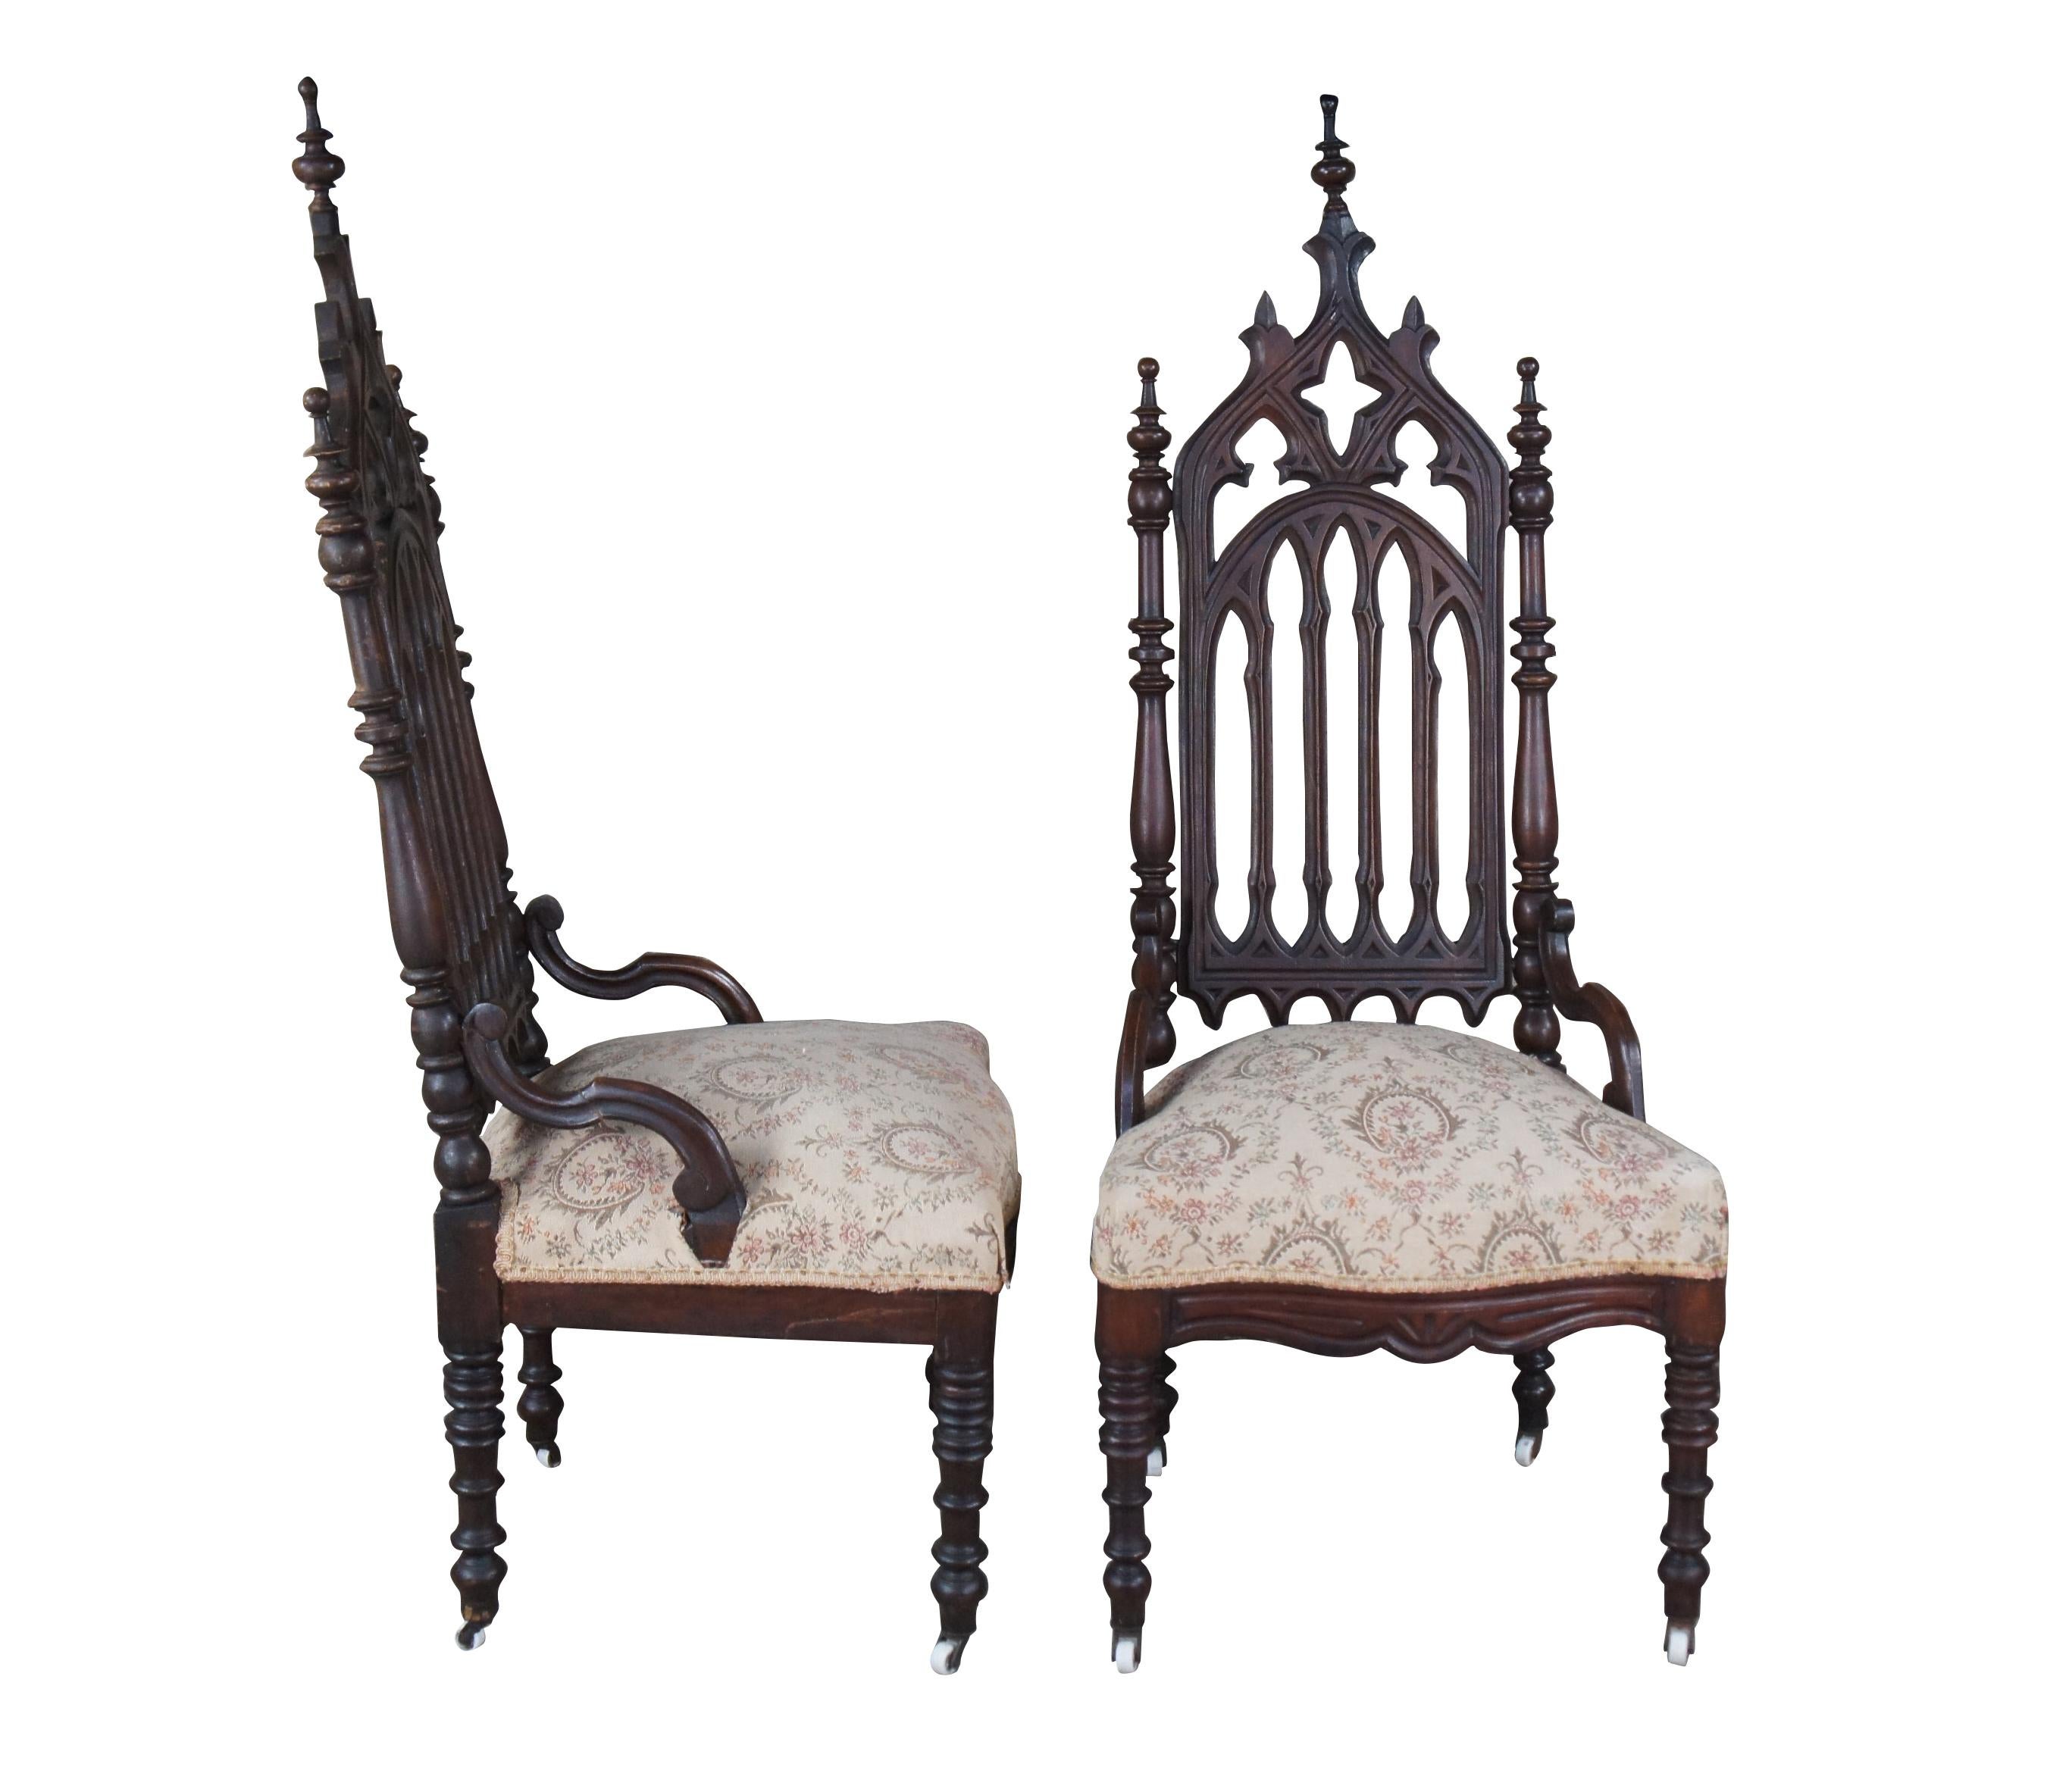 Paire d'impressionnants fauteuils d'appoint de style néo-gothique/renaissance, ornés de motifs ajourés en haut-relief et dotés de pieds et de montants tournés sur roulettes.

Le style néo-gothique s'inscrit dans le mouvement pittoresque et